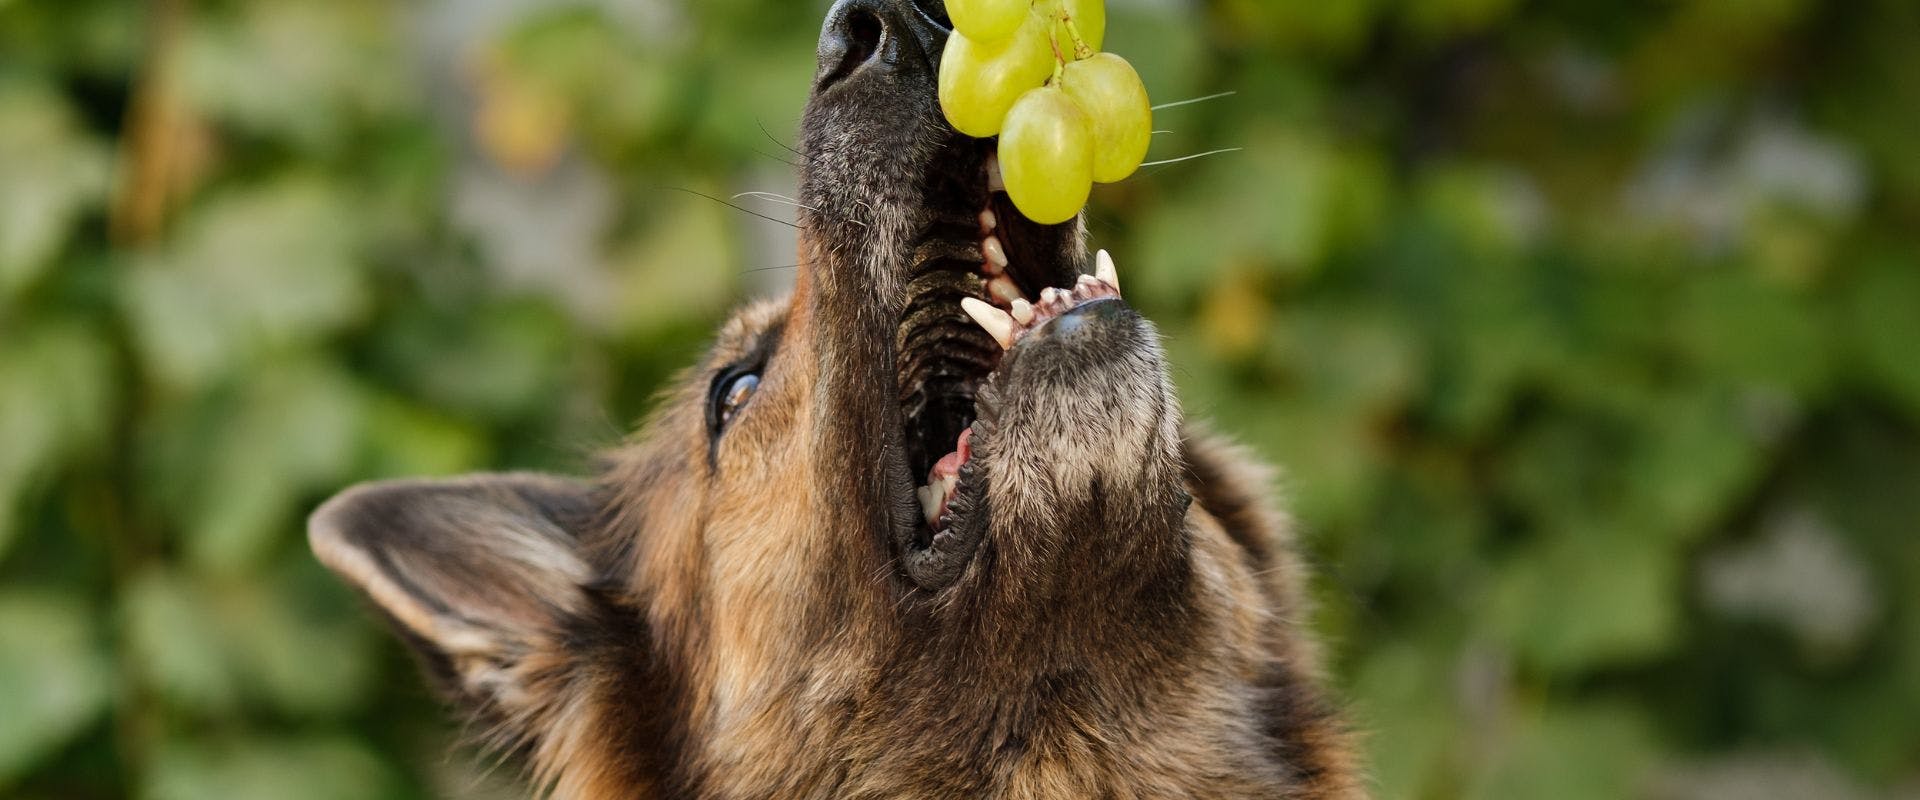 German Shepherd looking at green grapes